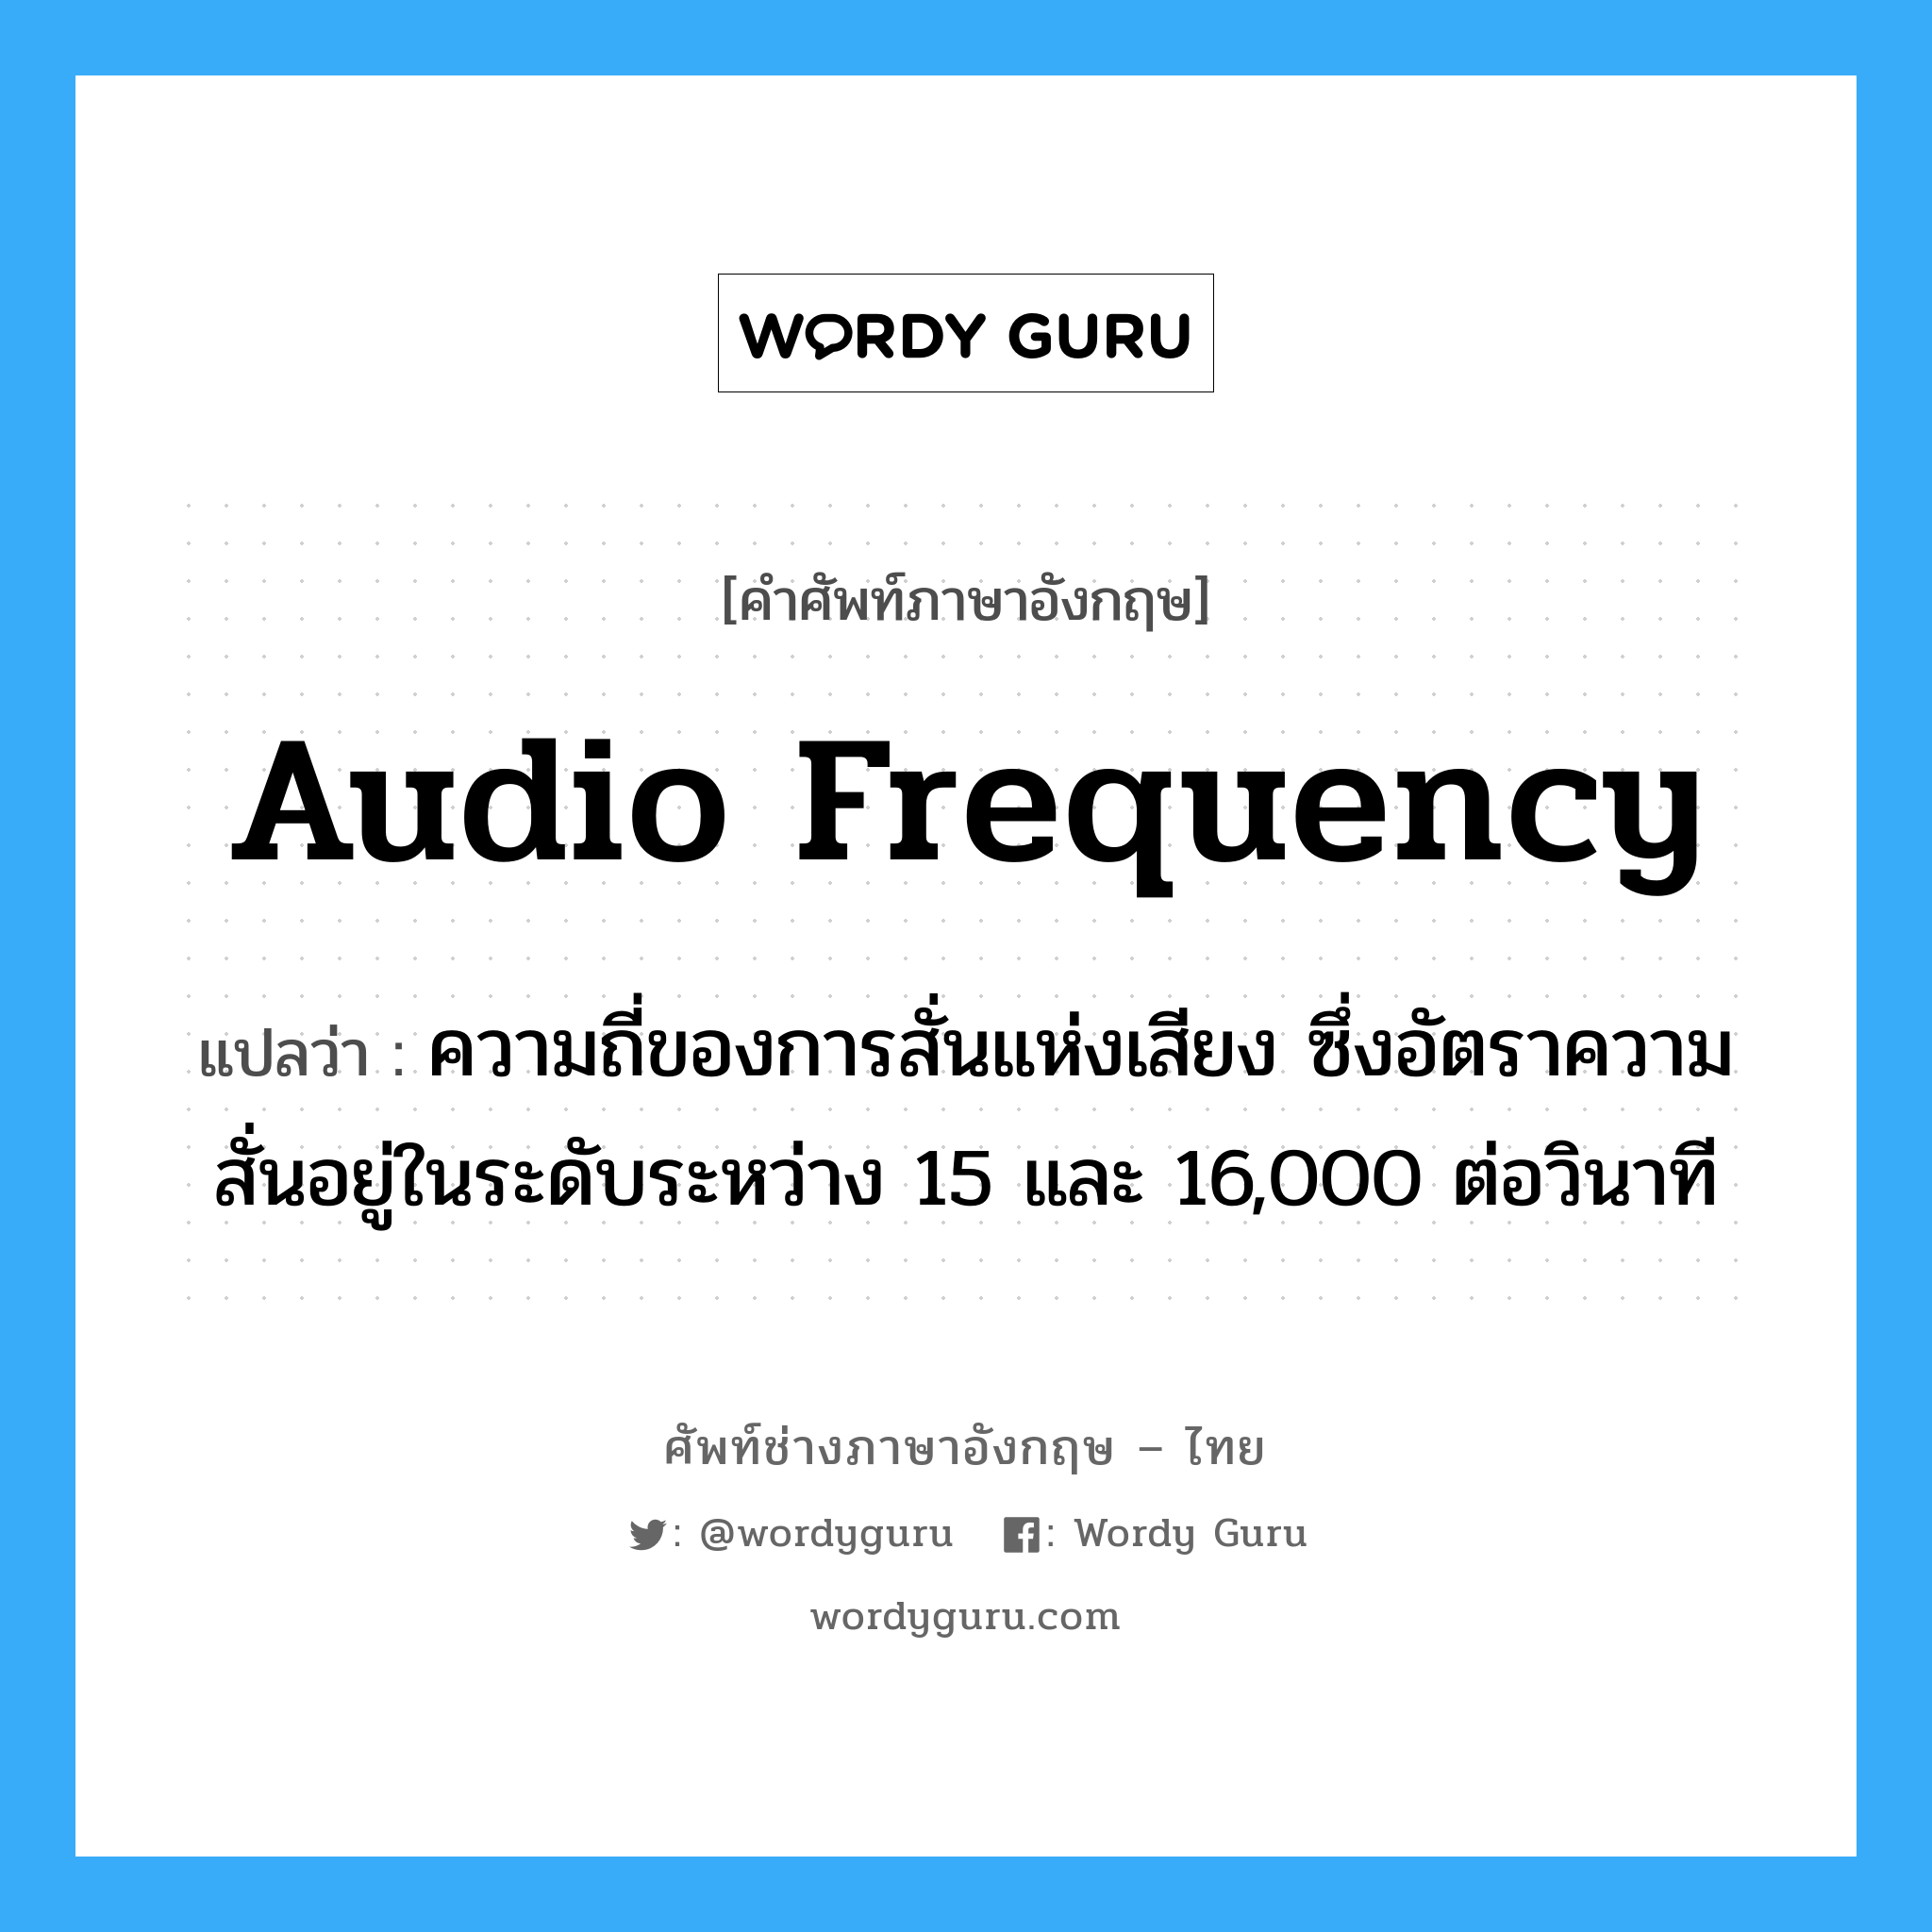 audio frequency แปลว่า?, คำศัพท์ช่างภาษาอังกฤษ - ไทย audio frequency คำศัพท์ภาษาอังกฤษ audio frequency แปลว่า ความถี่ของการสั่นแห่งเสียง ซึ่งอัตราความสั่นอยู่ในระดับระหว่าง 15 และ 16,000 ต่อวินาที